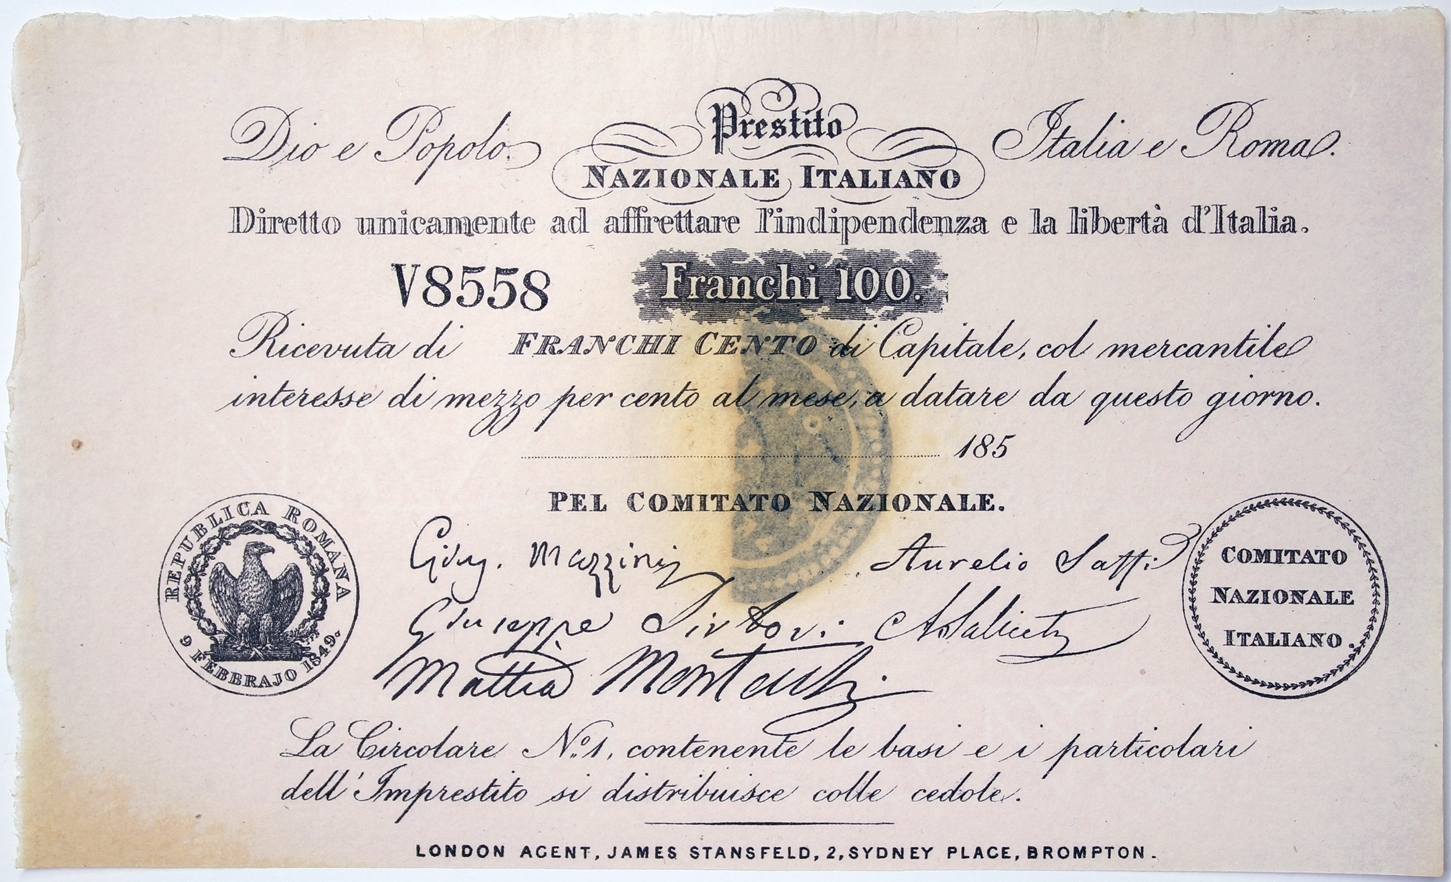 100 FRANCHI 1850 PRESTITO NAZIONALE ITALIANO BANCONOTA RISORGIMENTALE FDS #BI39